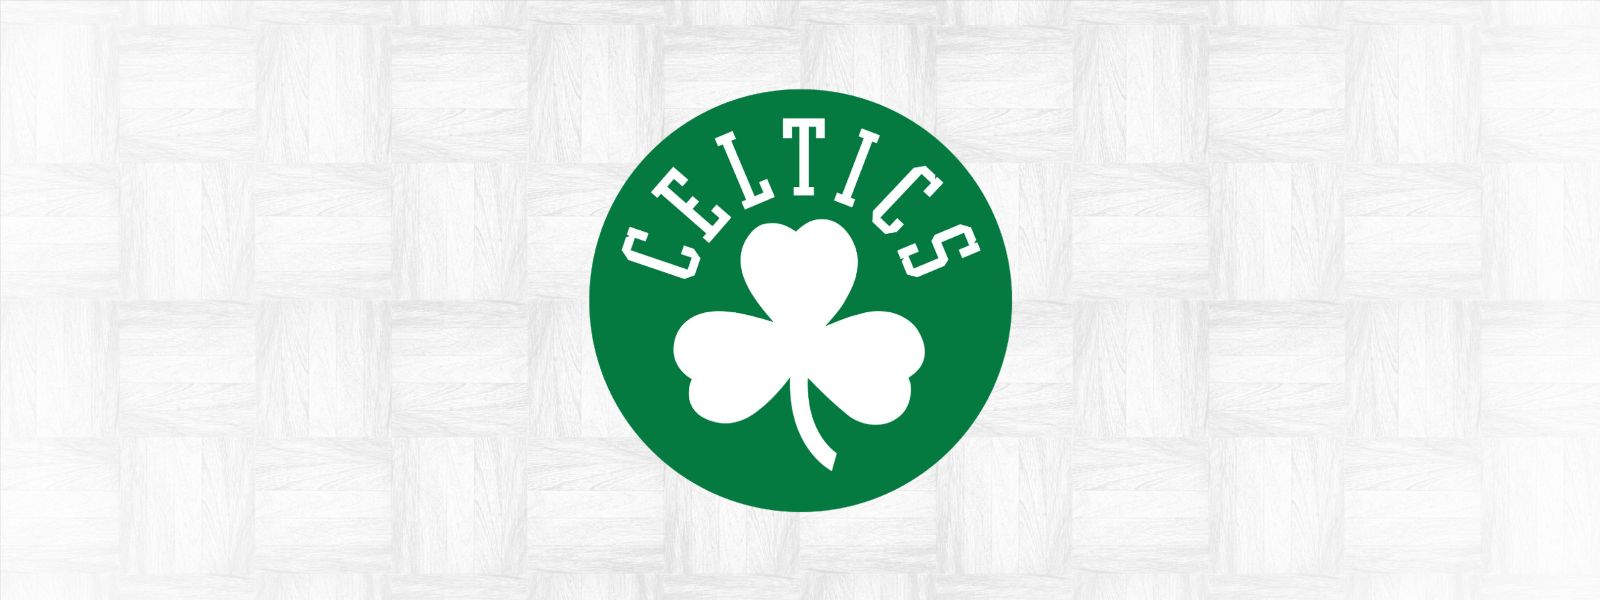 More Info for Celtics vs. Nets